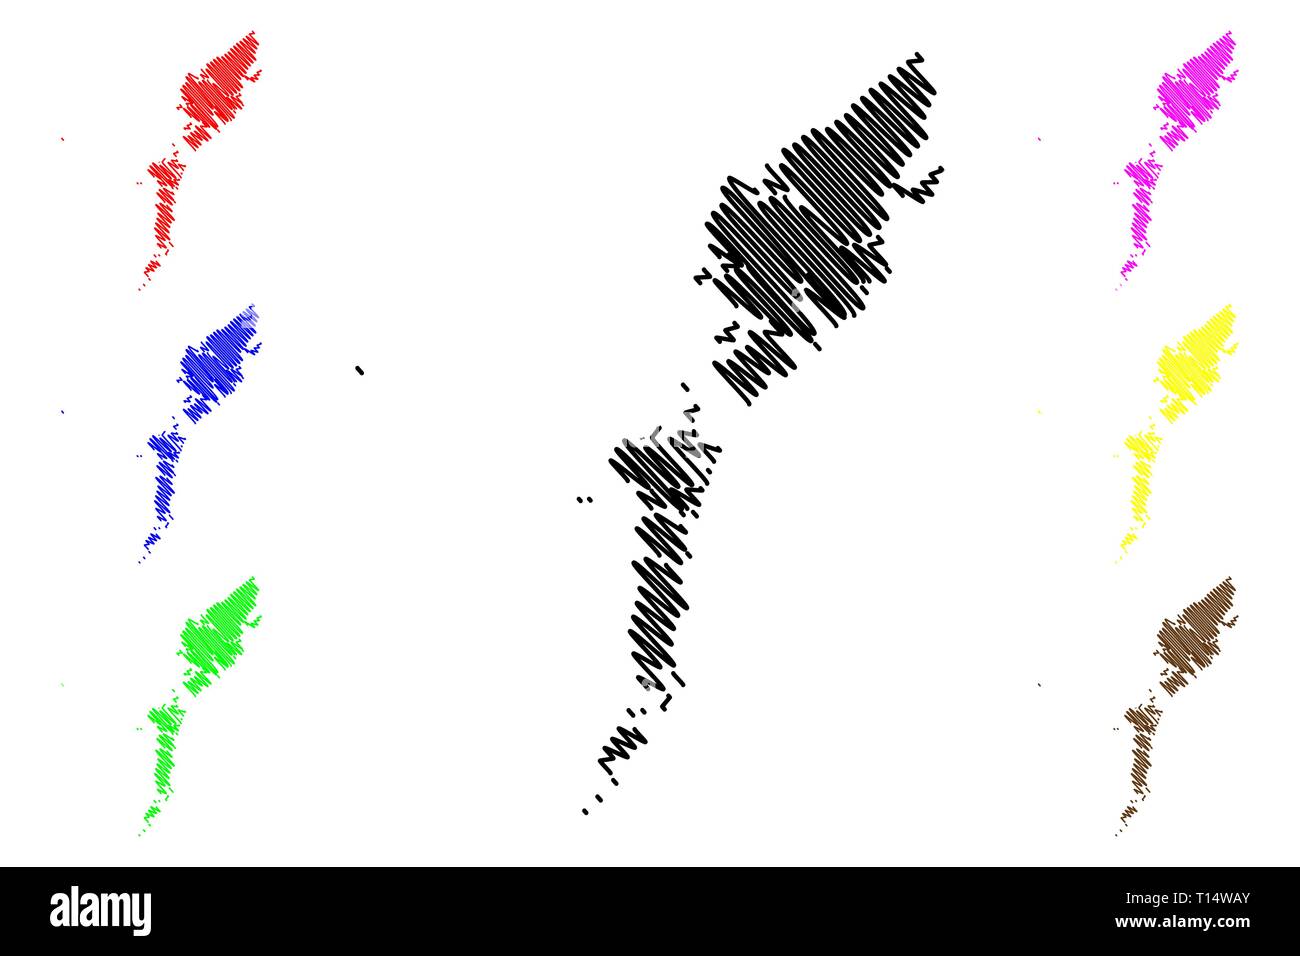 Comhairle Nan Eilean Siar (Vereinigtes Königreich, Schottland, lokale Regierung in Schottland) Karte Vektor-illustration, kritzeln Skizze Na h-eileanan Siar (Äußere Stock Vektor